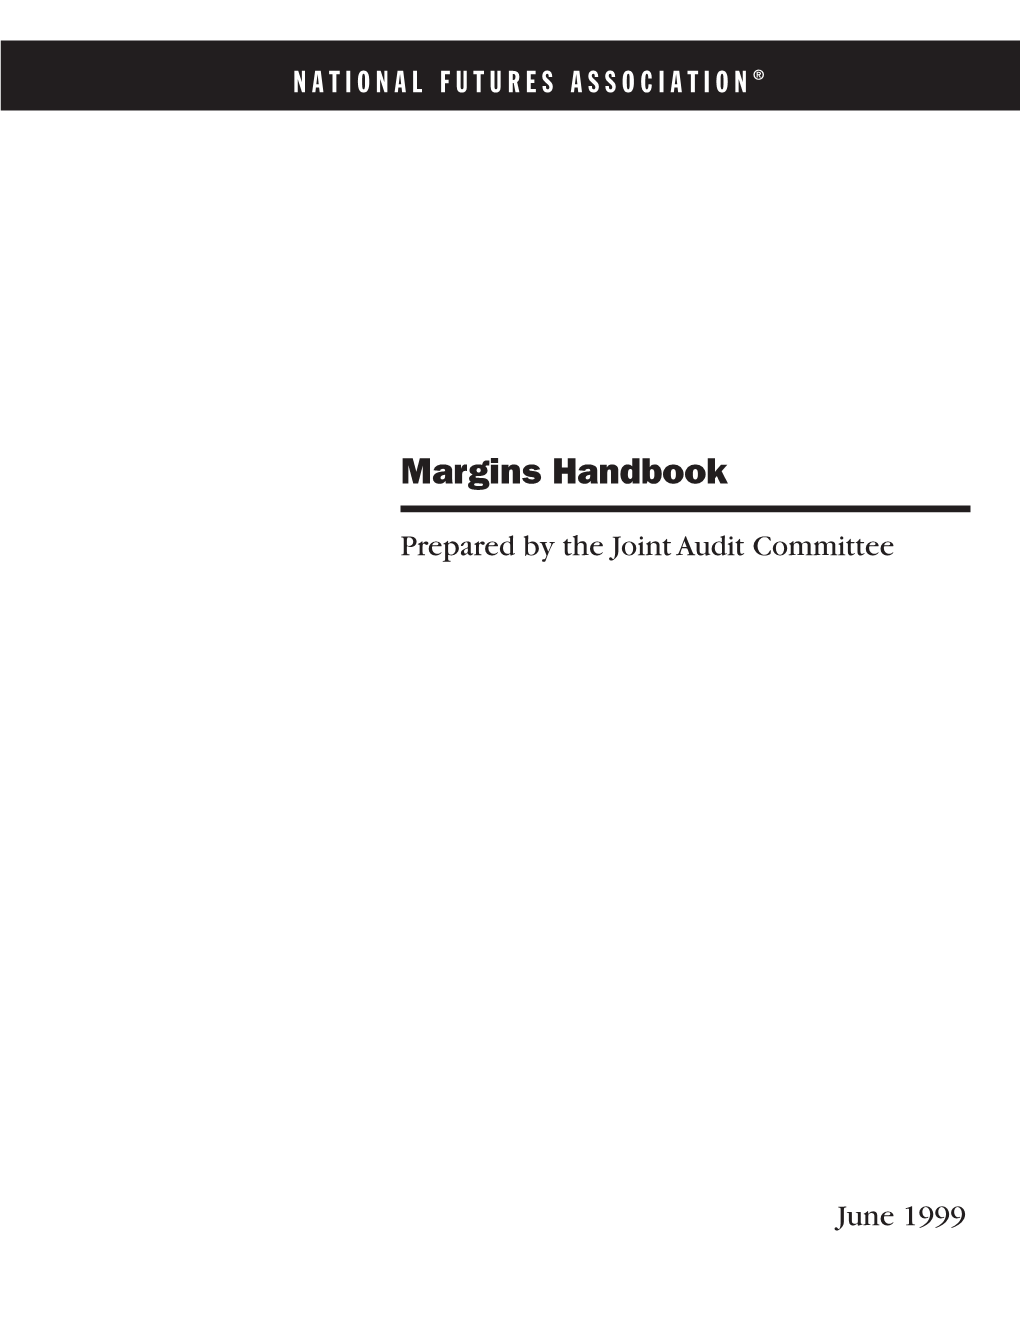 The Joint Audit Committee Margins Handbook